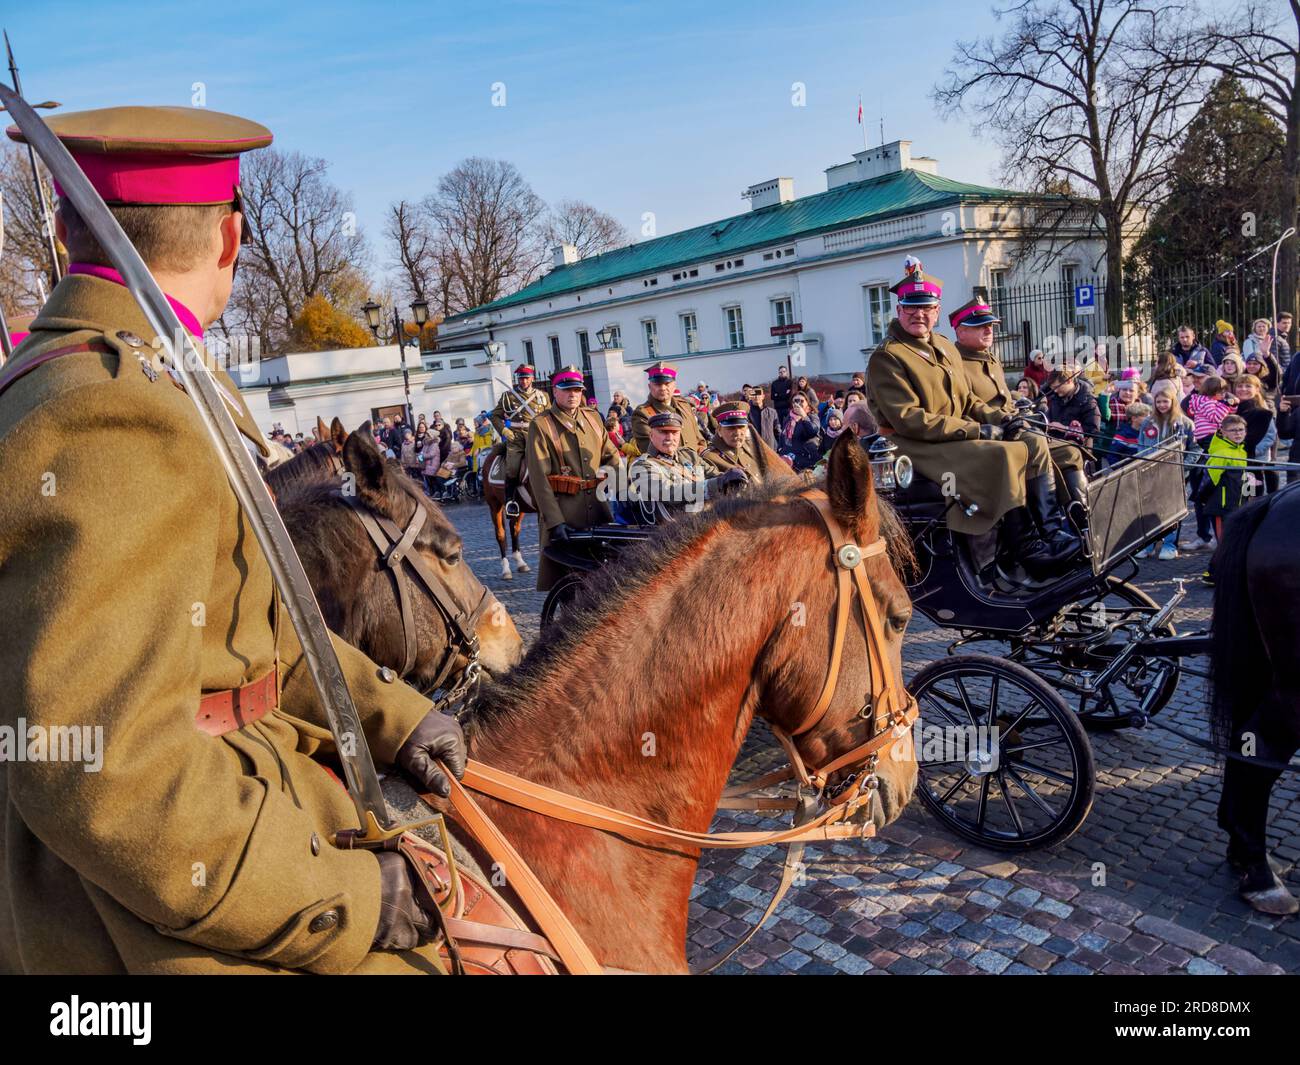 Schauspieler wie Jozef Pilsudski in einer Kutsche, National Independence Day Horse Parade, Lazienki Park (Royal Baths Park), Warschau, Masowisches Woiwodschaft, Polen Stockfoto